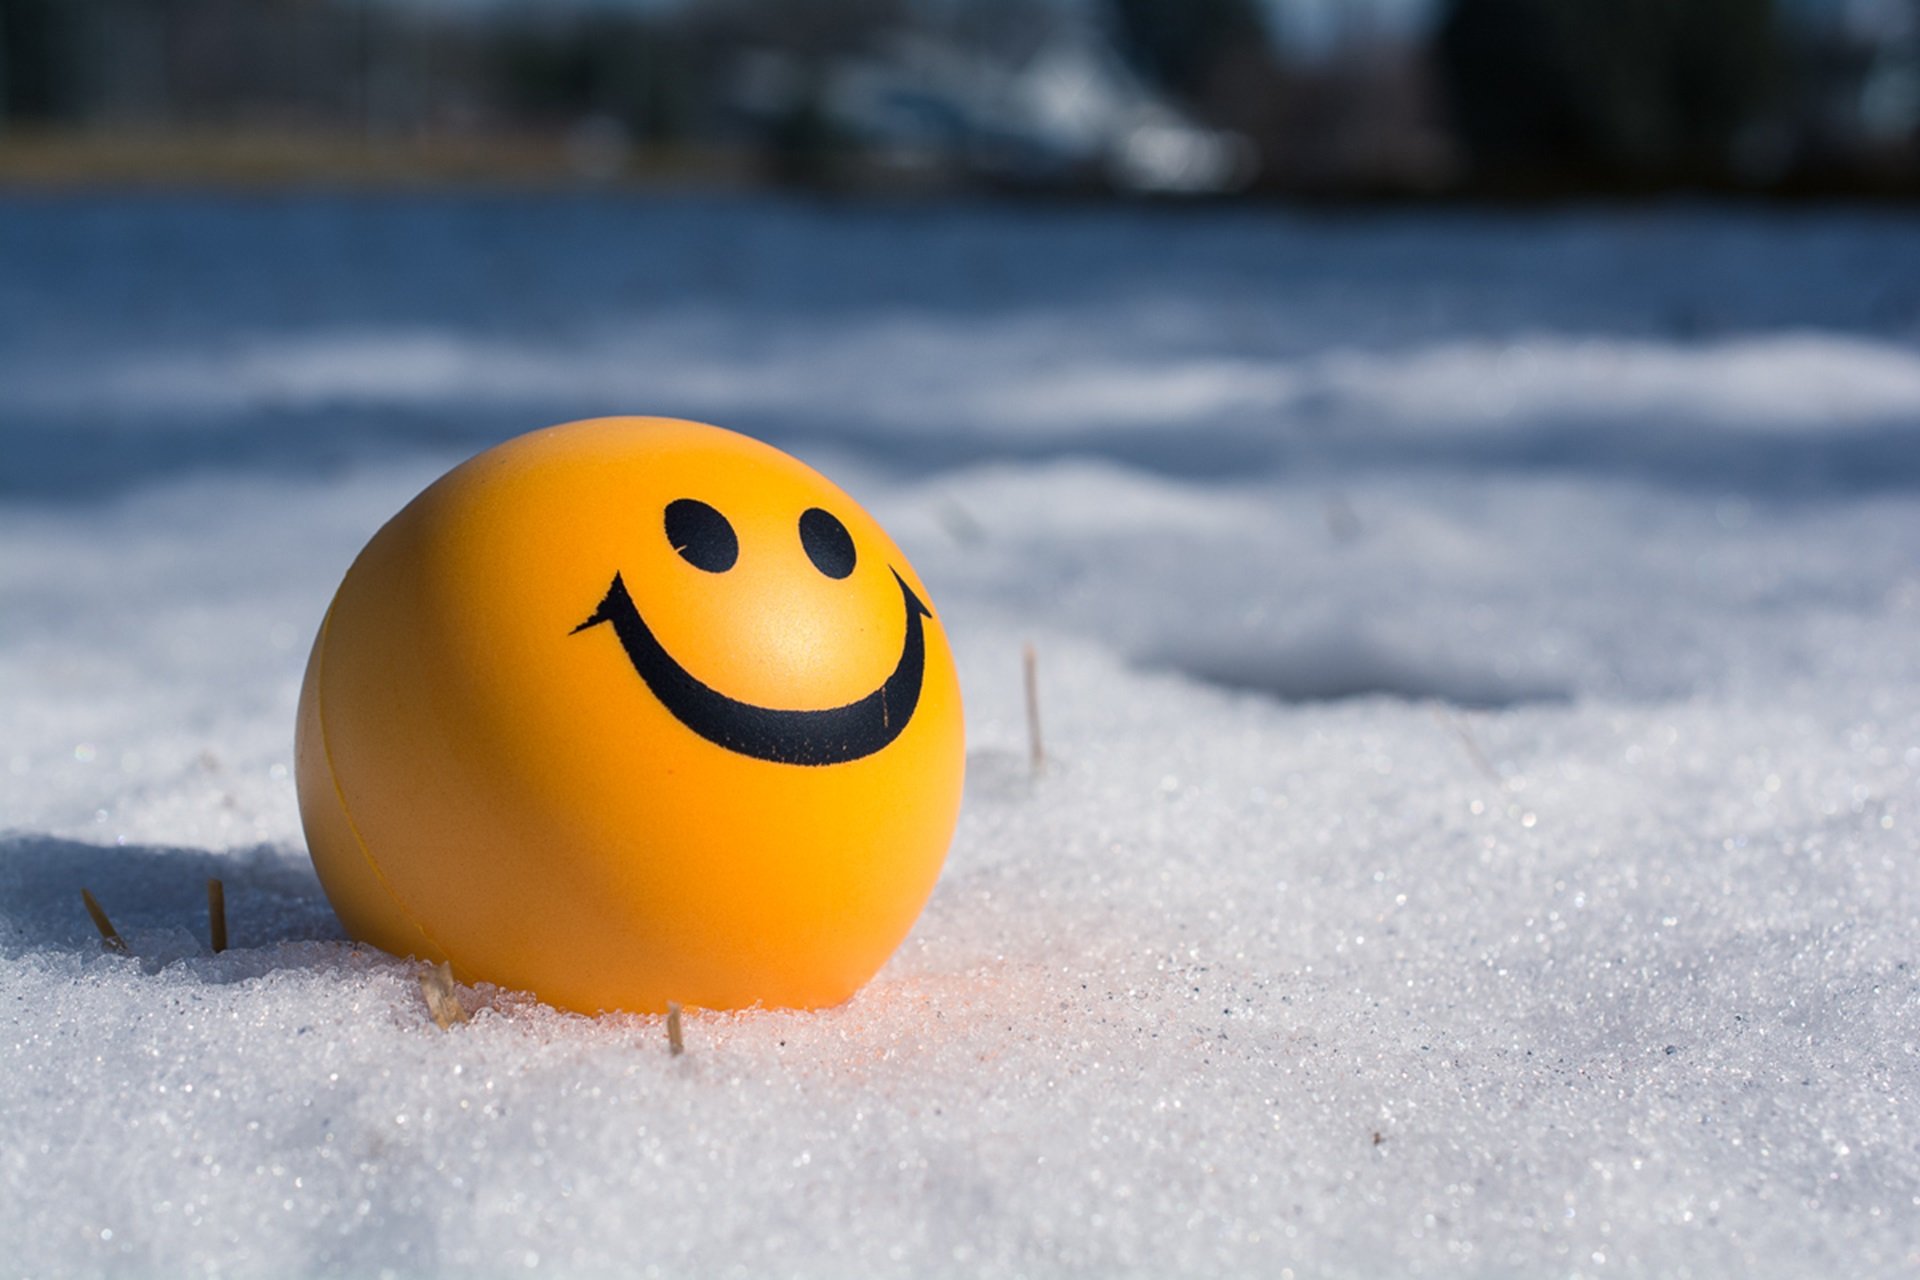 pallina gialla nella neve che sorride, per mostrare un widget di wordpress modificato in php felice